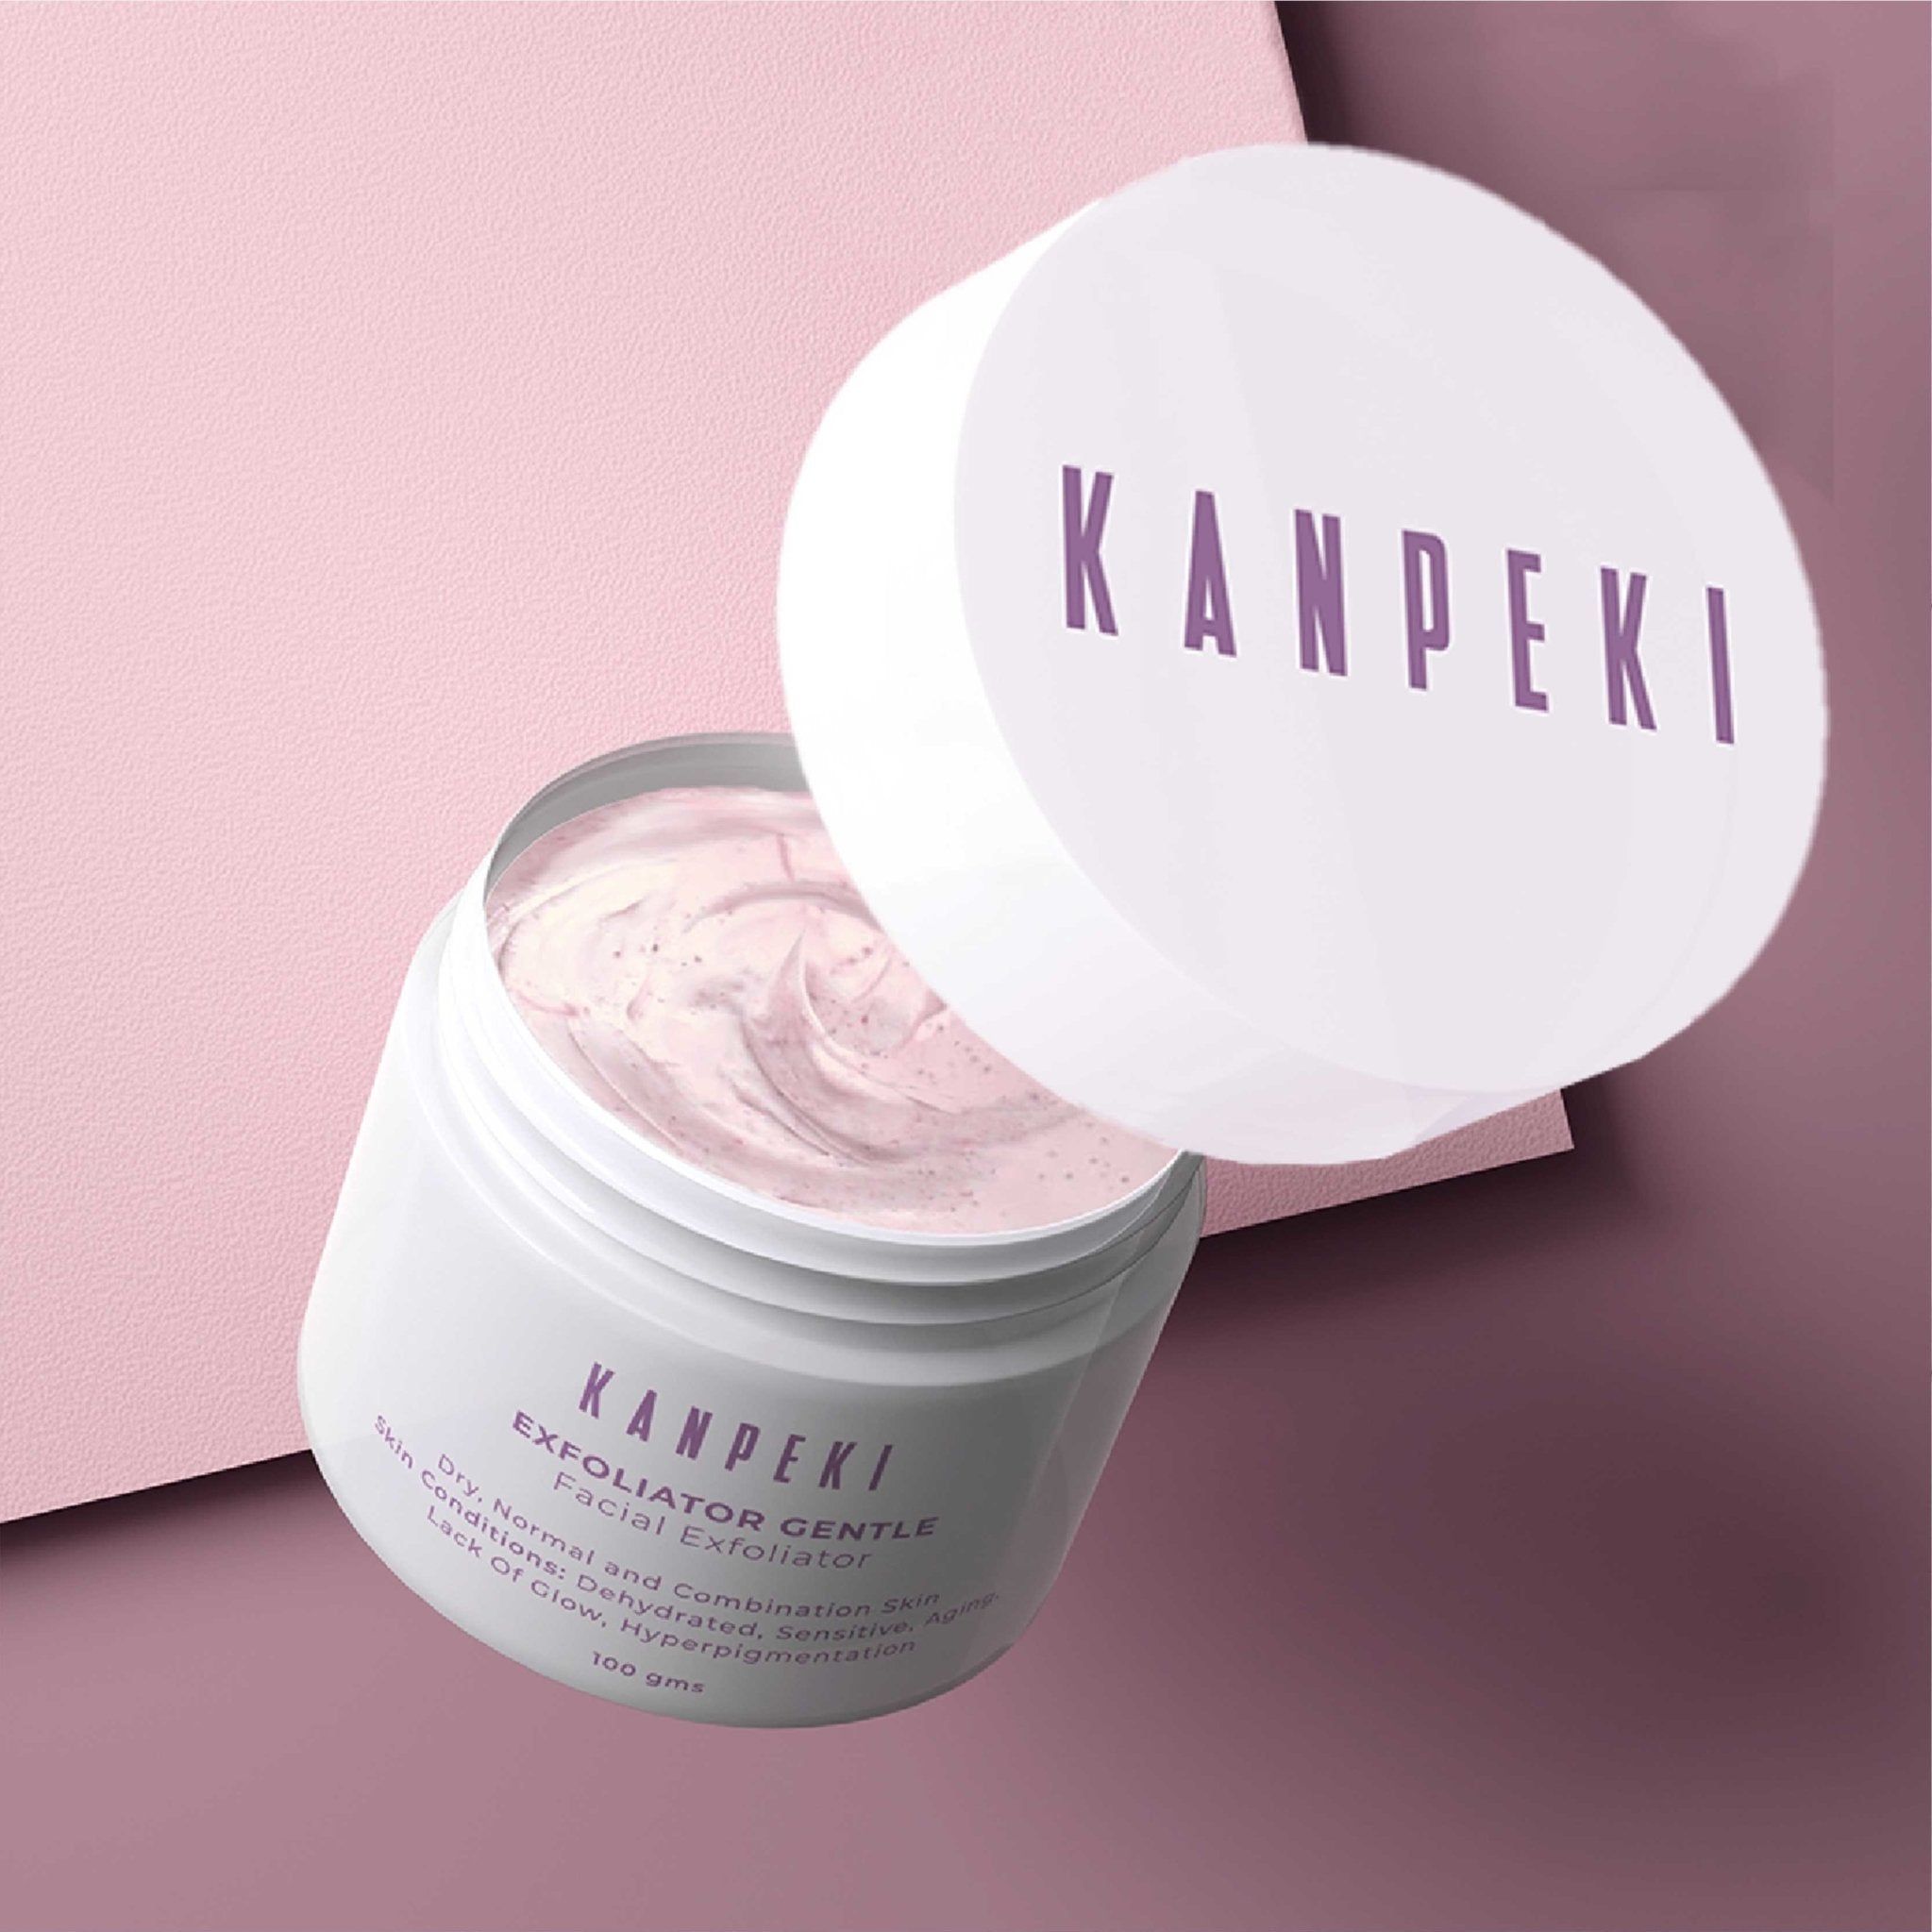 Exfoliator Gentle - Kanpeki Skincare